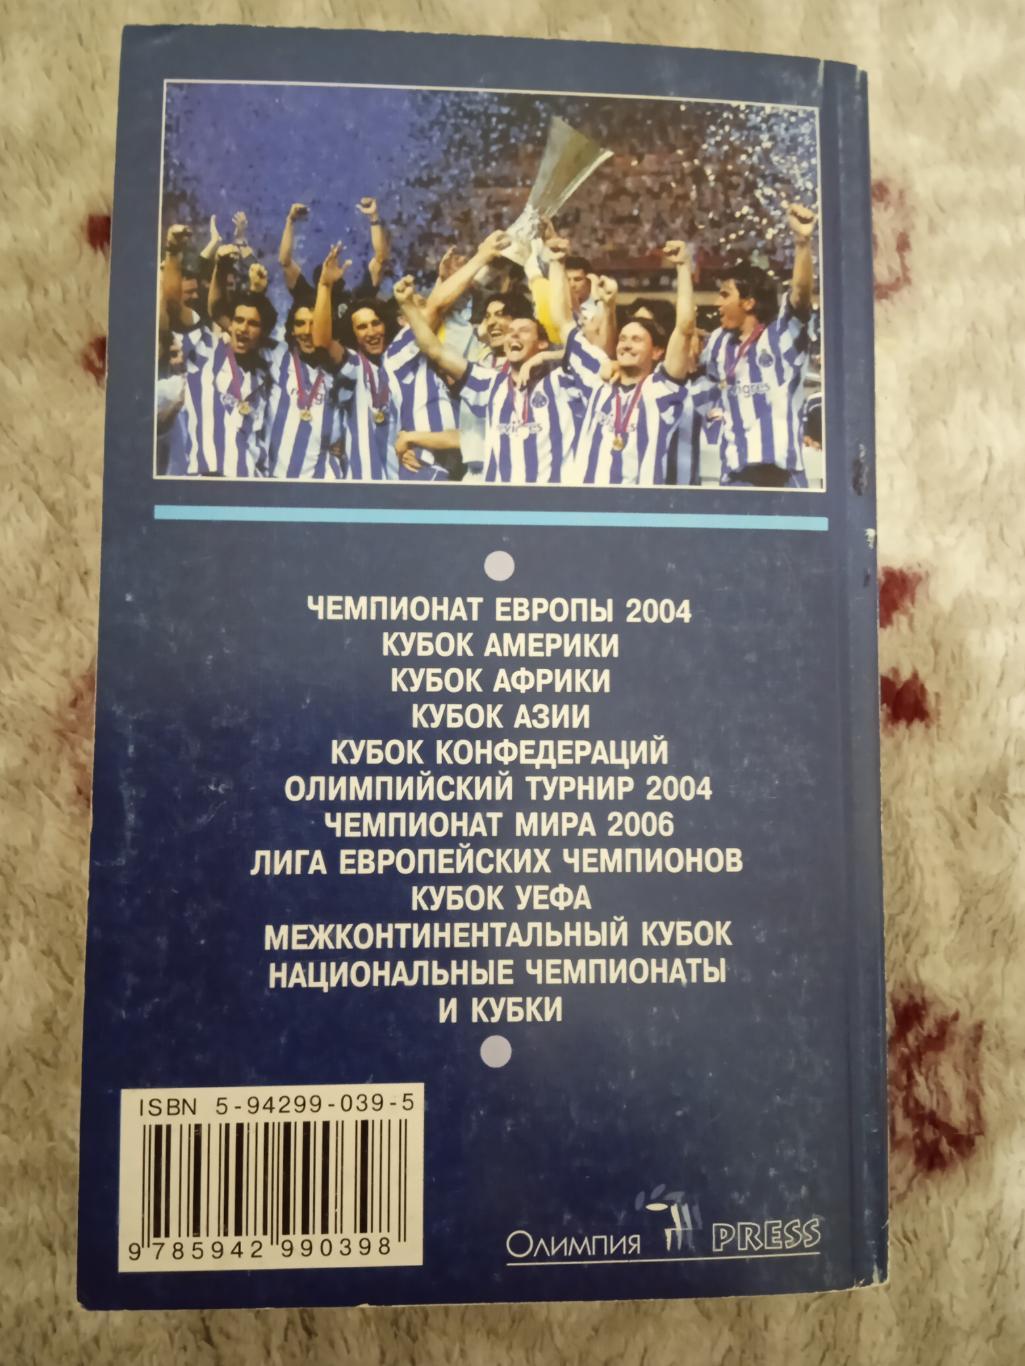 И.Гольдес.Мировой футбол 2005 (сезон 2003-2004).Москва.Олимпия-Пресс 2005. 1